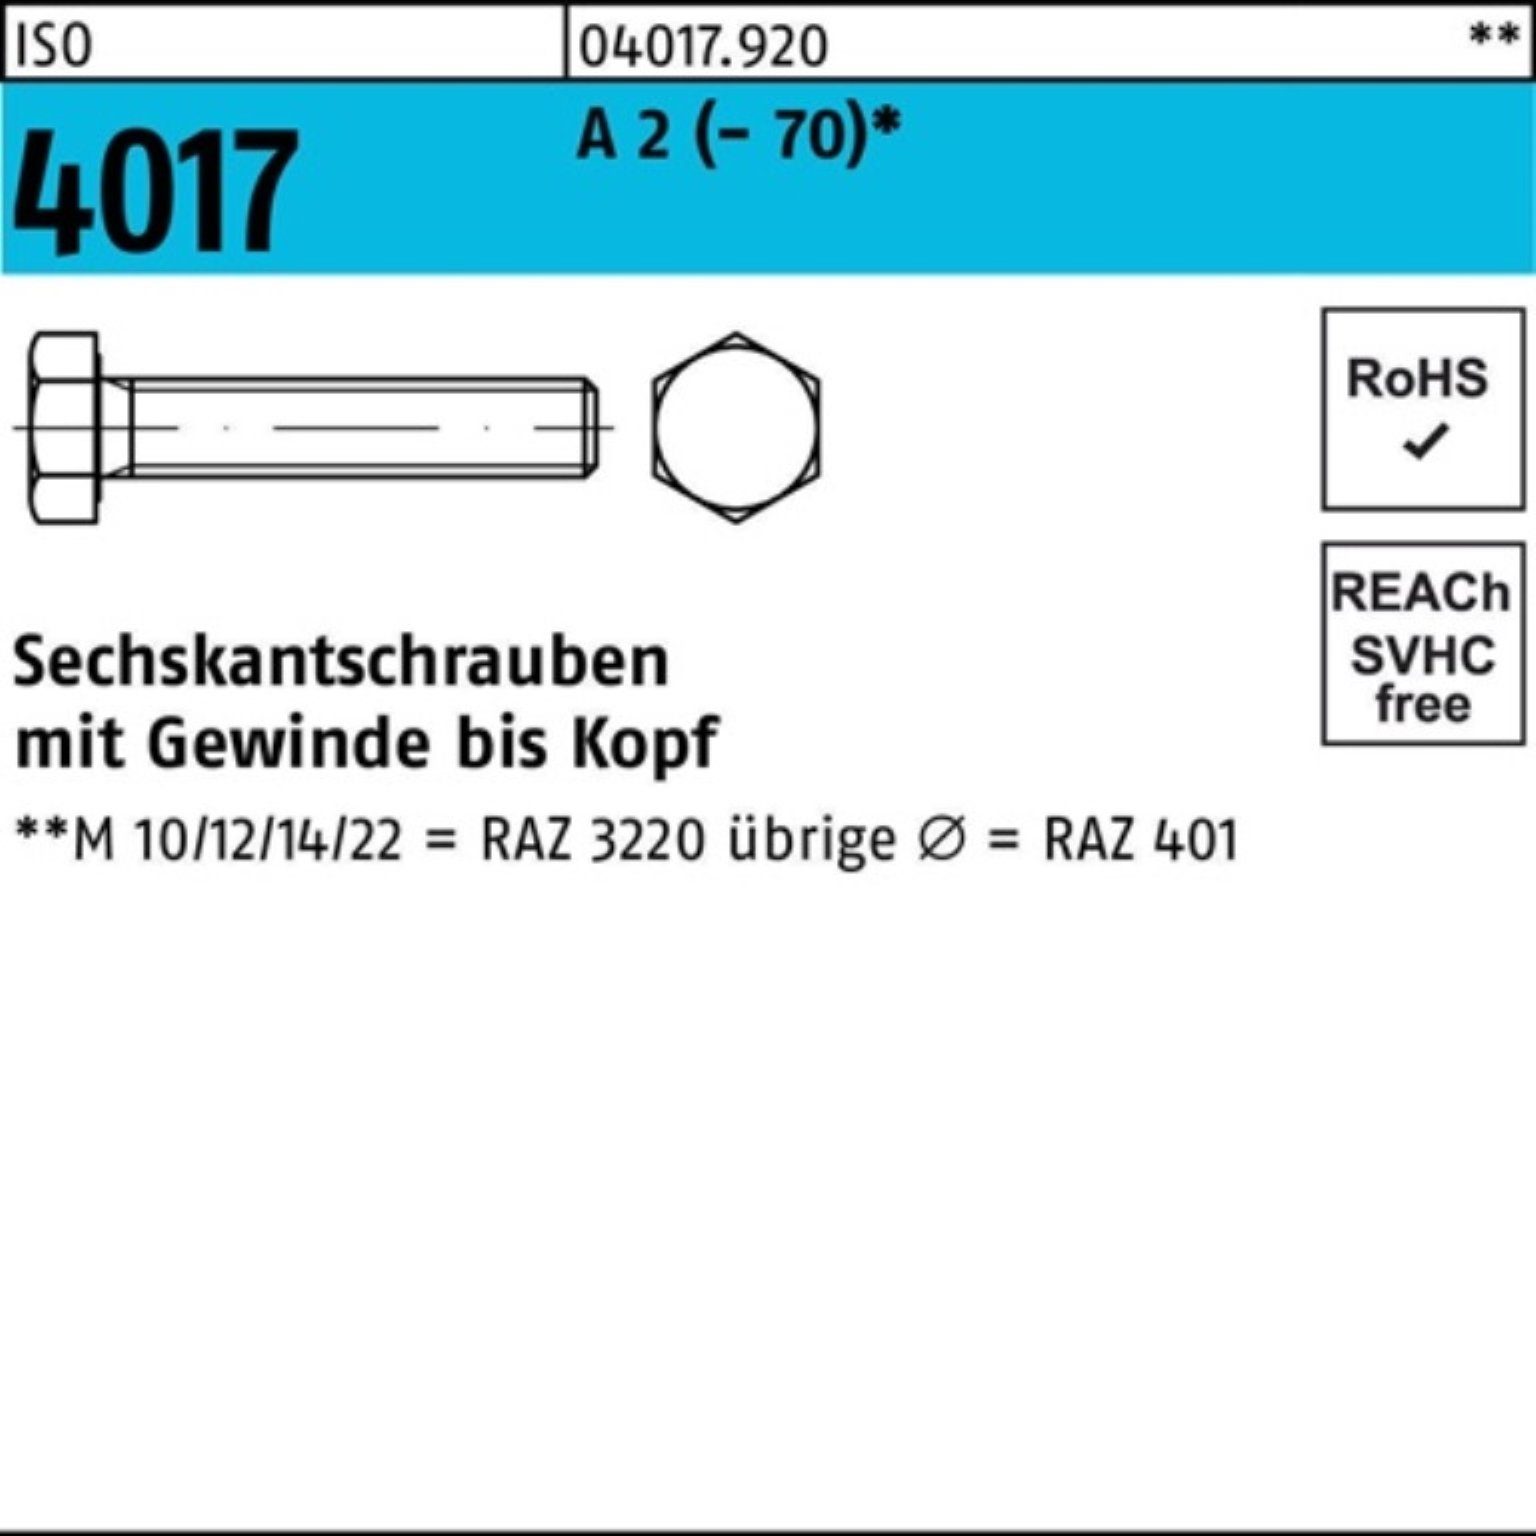 Bufab Sechskantschraube 100er Pack Sechskantschraube ISO 4017 VG M4x 60 A 2 (70) 100 Stück